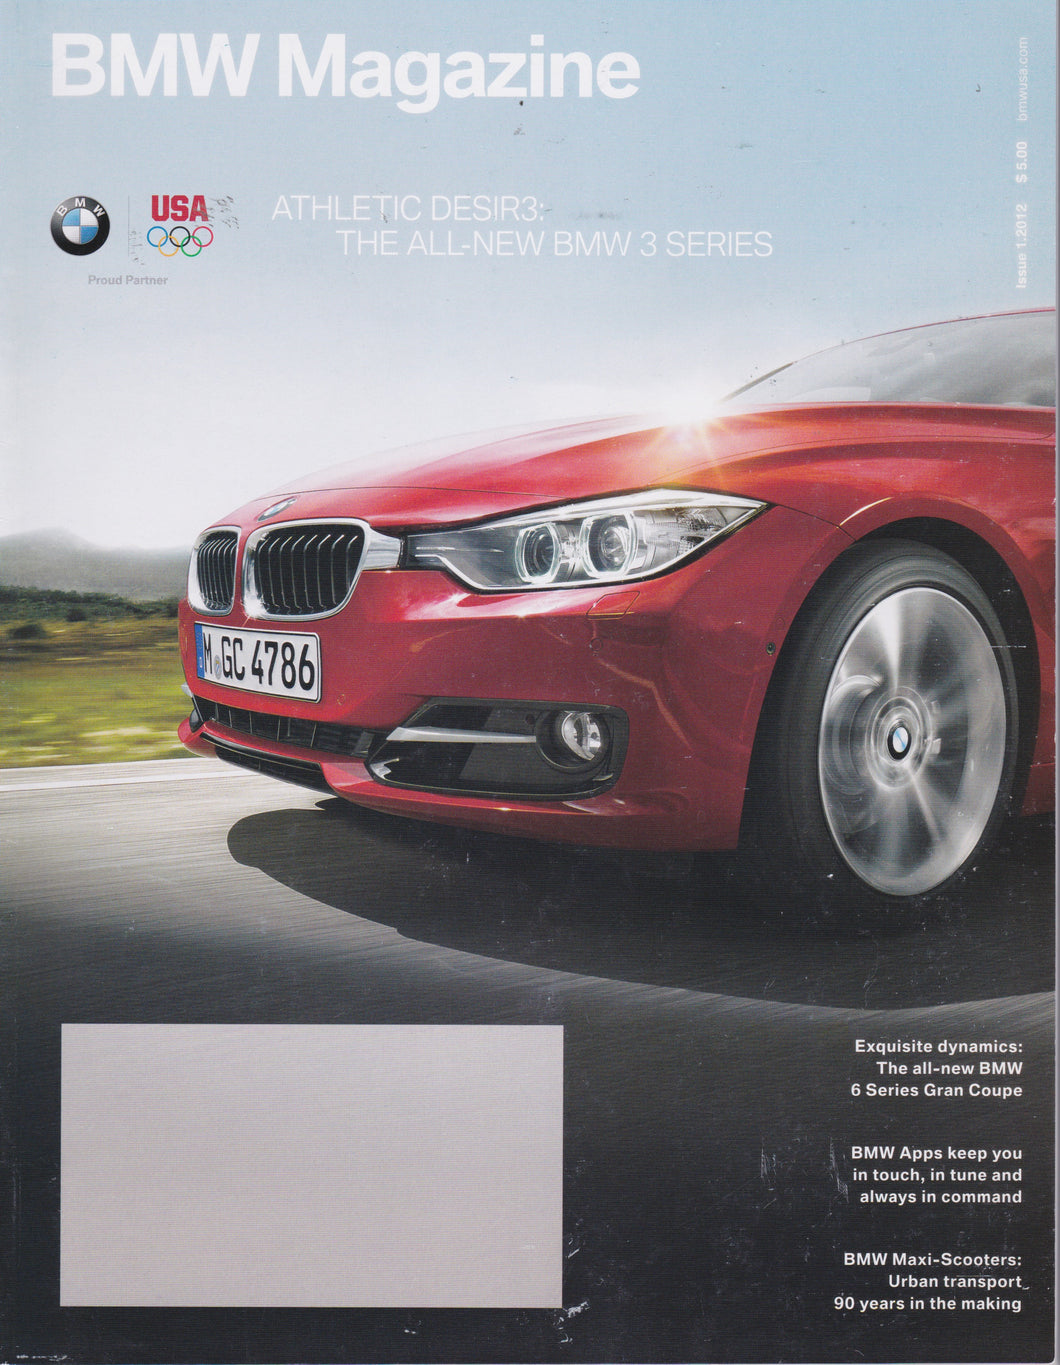 BMW Magazine / 01.2012